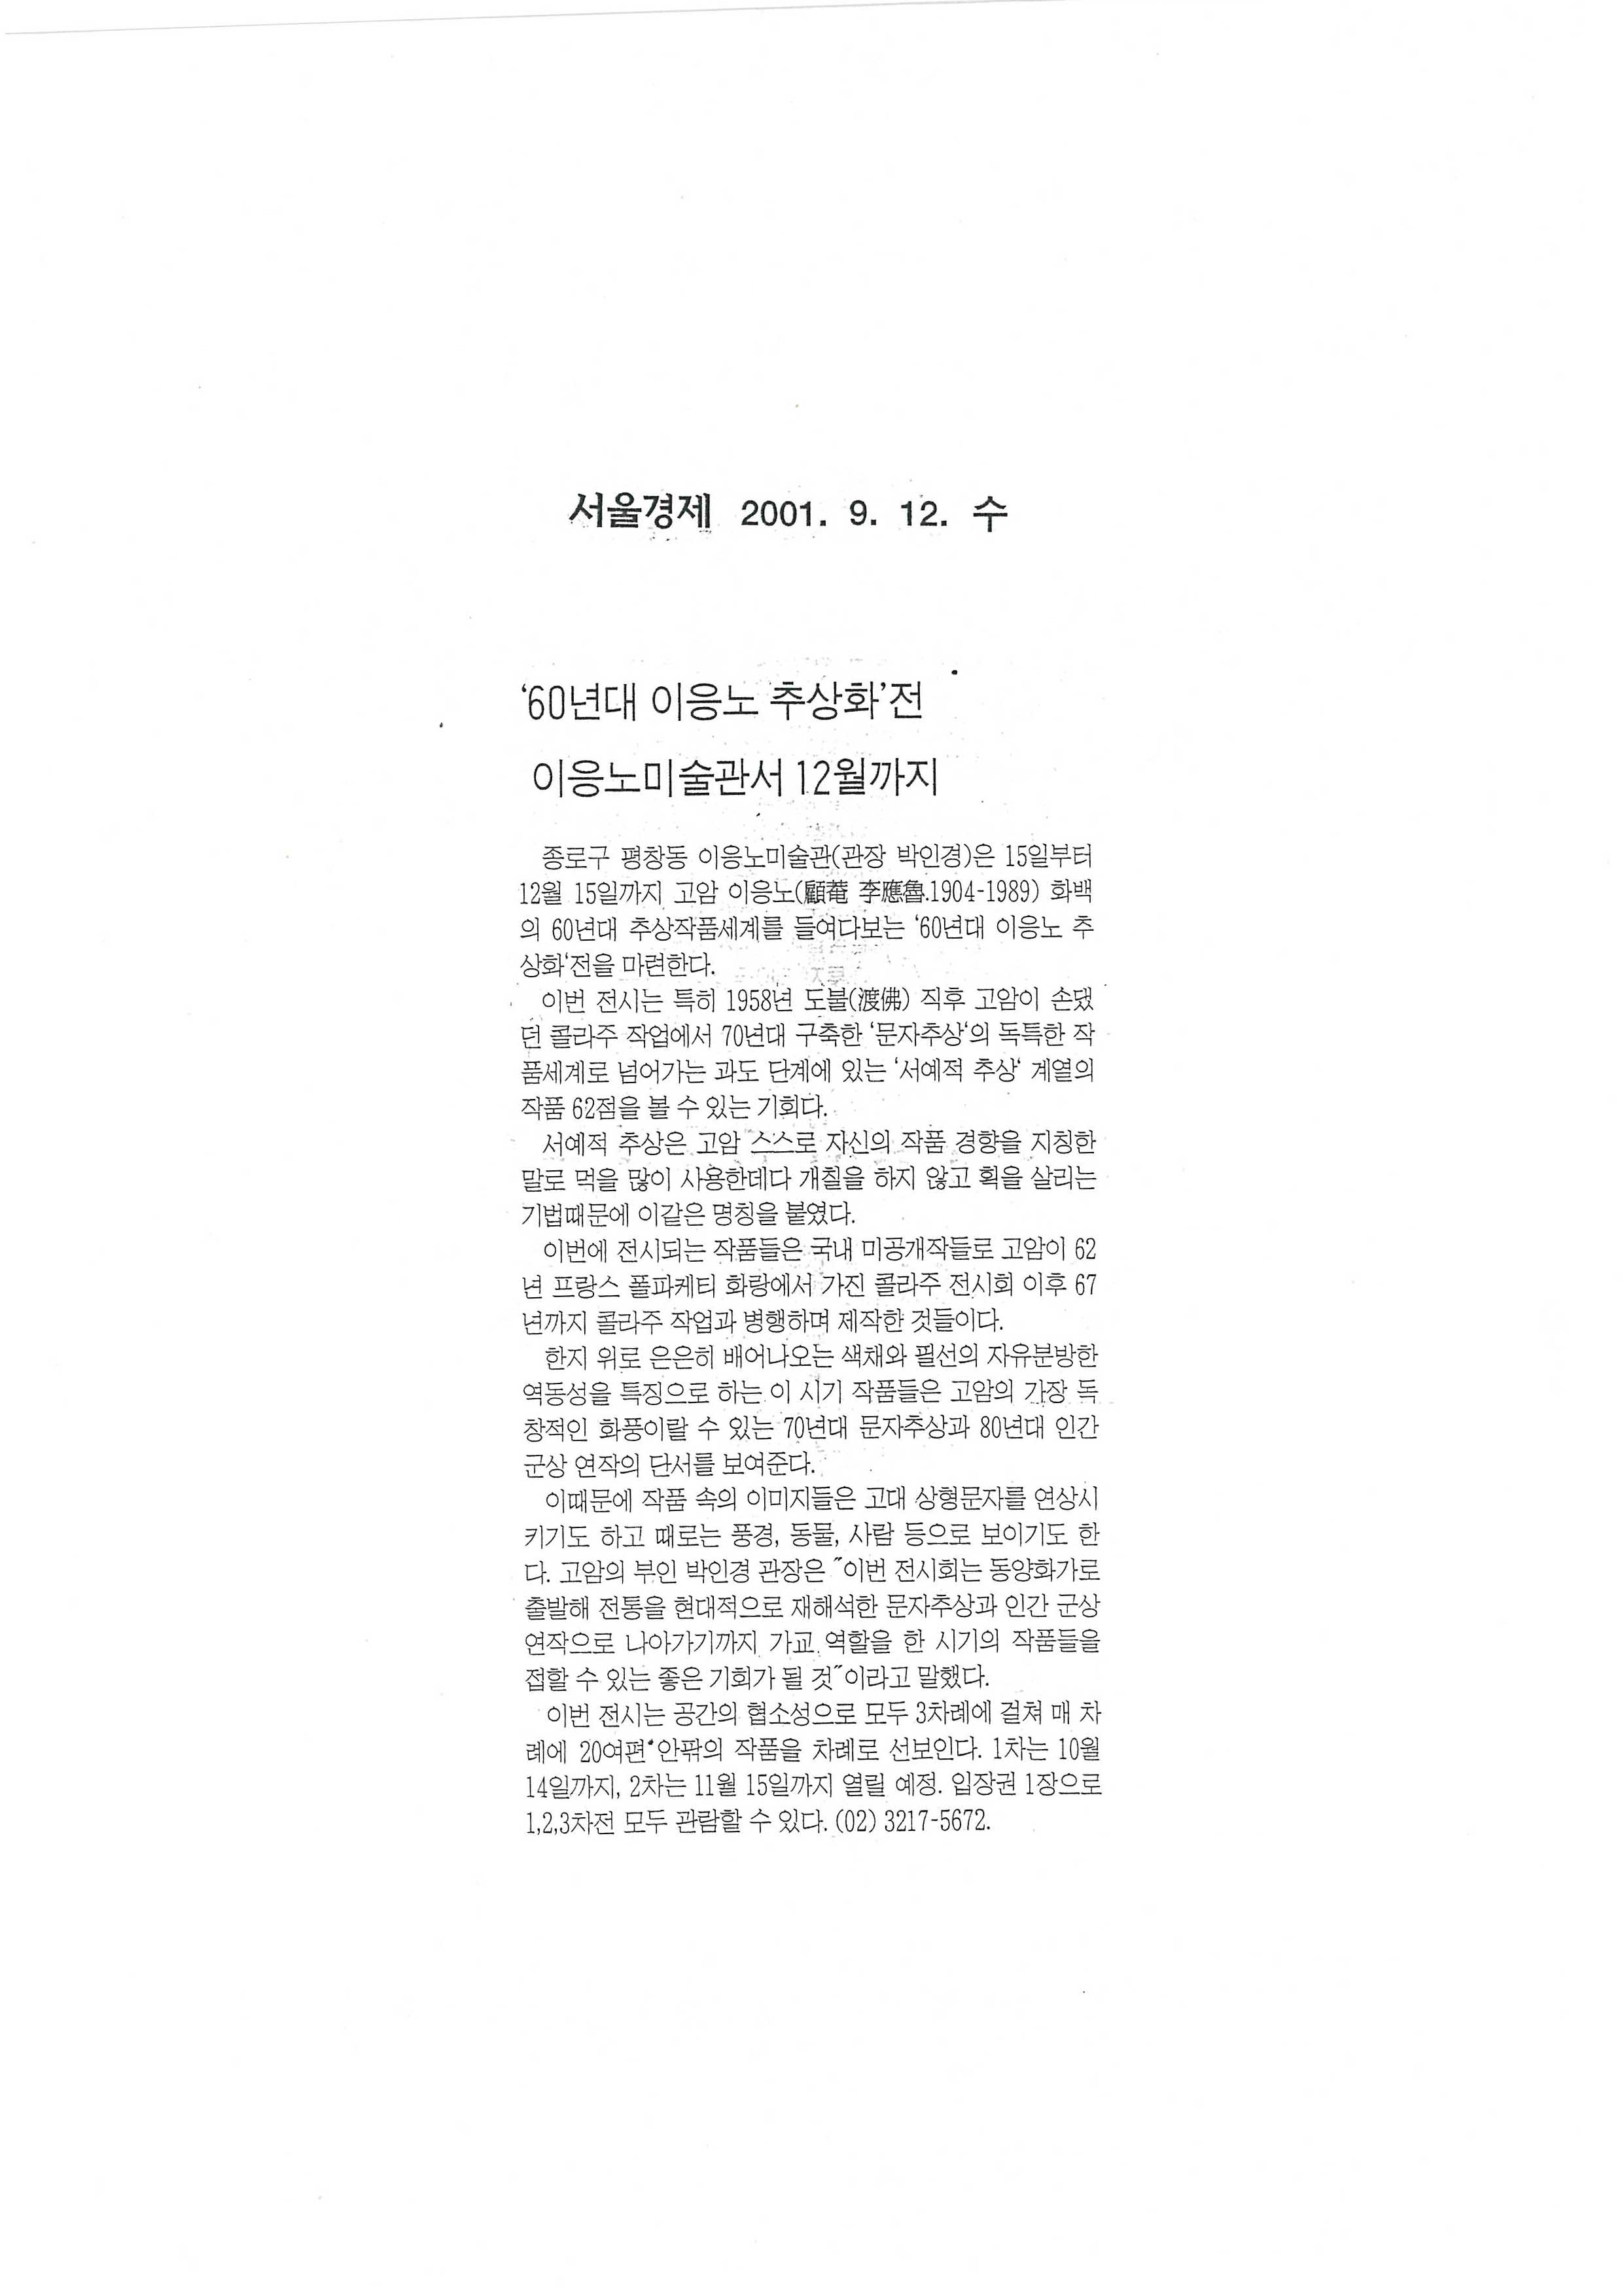  「《60년대 이응노 추상화》전 이응노미술관서 12월까지」, 『서울경제』 